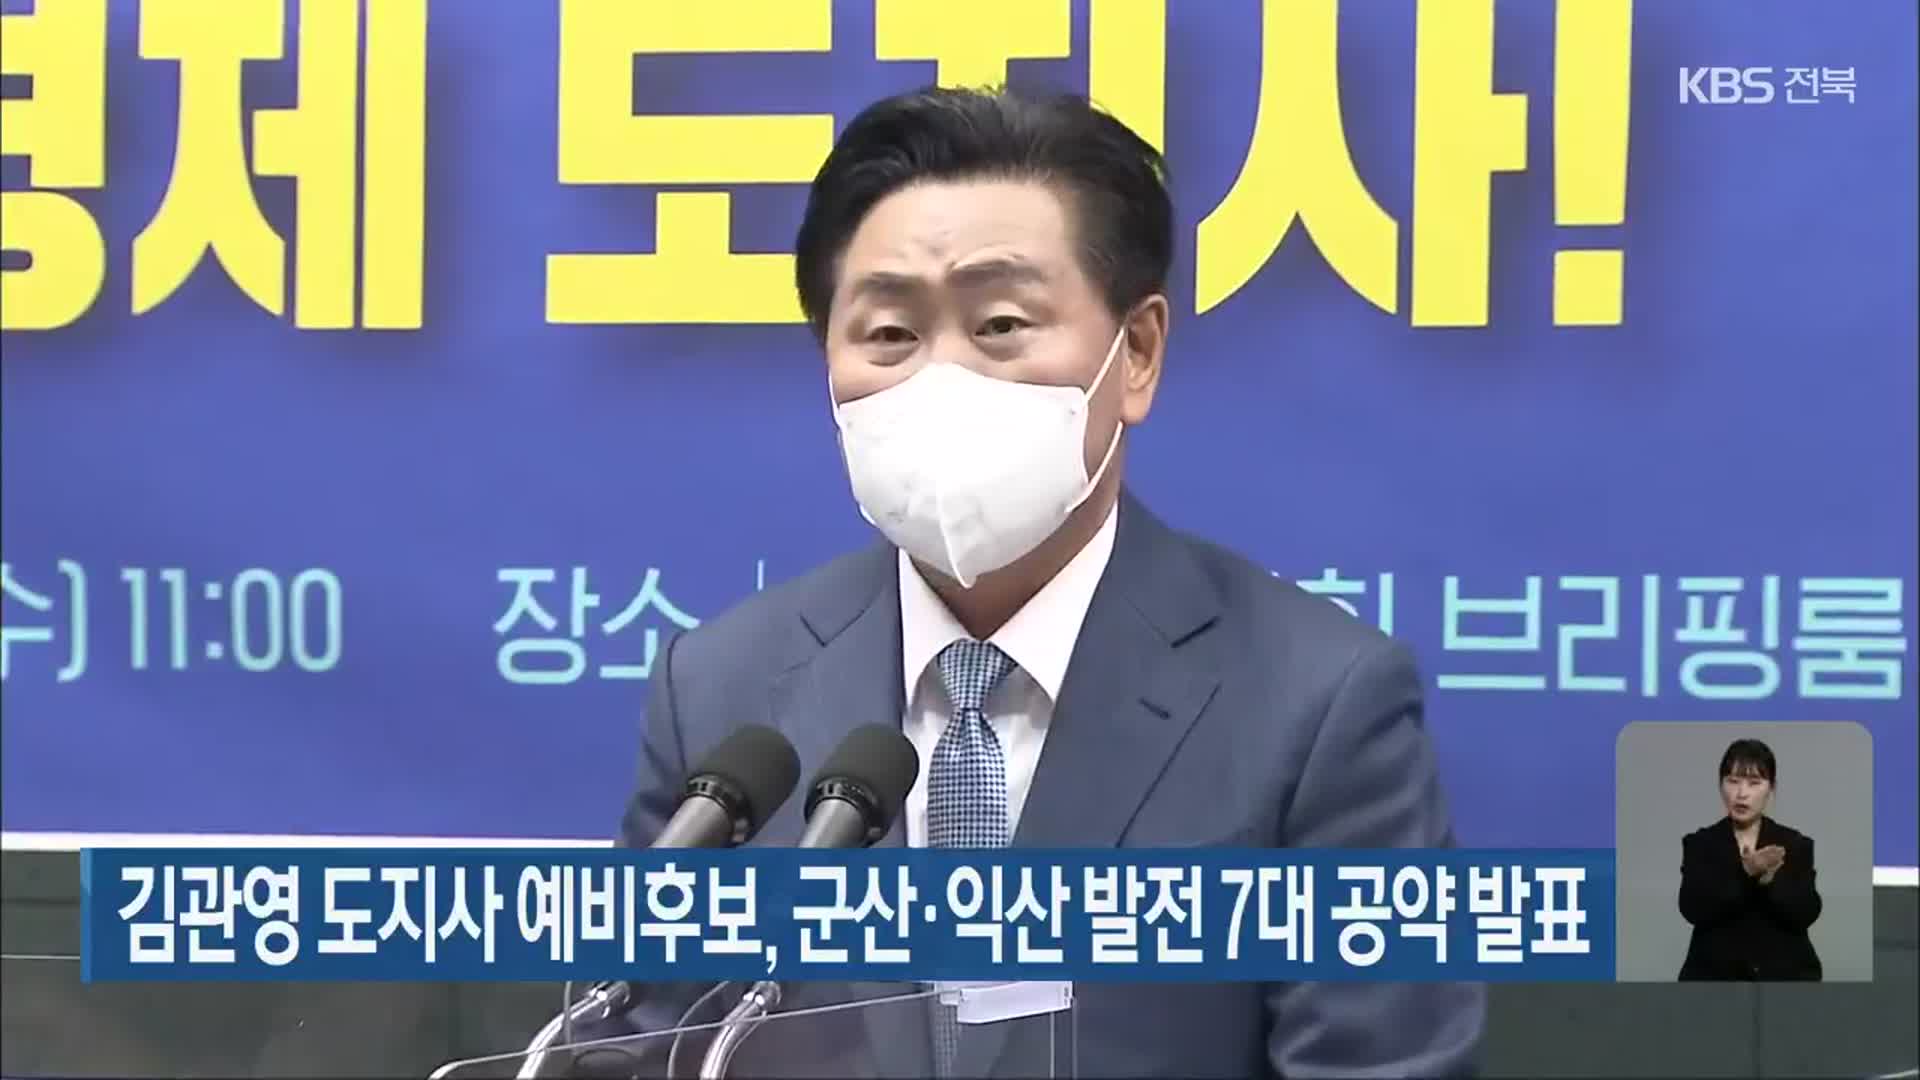 [전북] 김관영 도지사 예비후보, 군산·익산 발전 7대 공약 발표